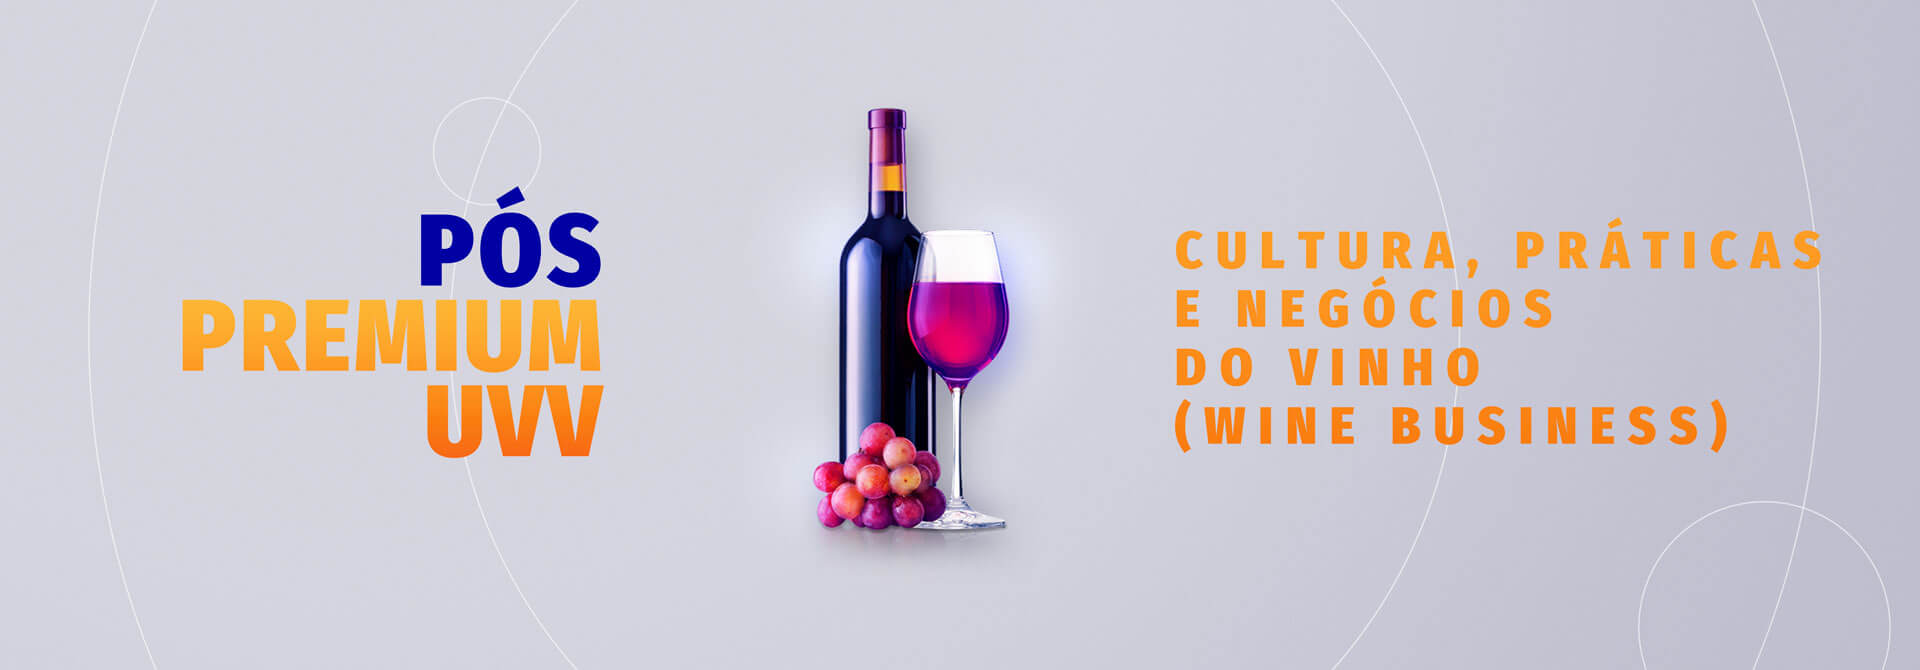 Pós em Cultura, práticas e negócios do vinho - Inscreva-se agora